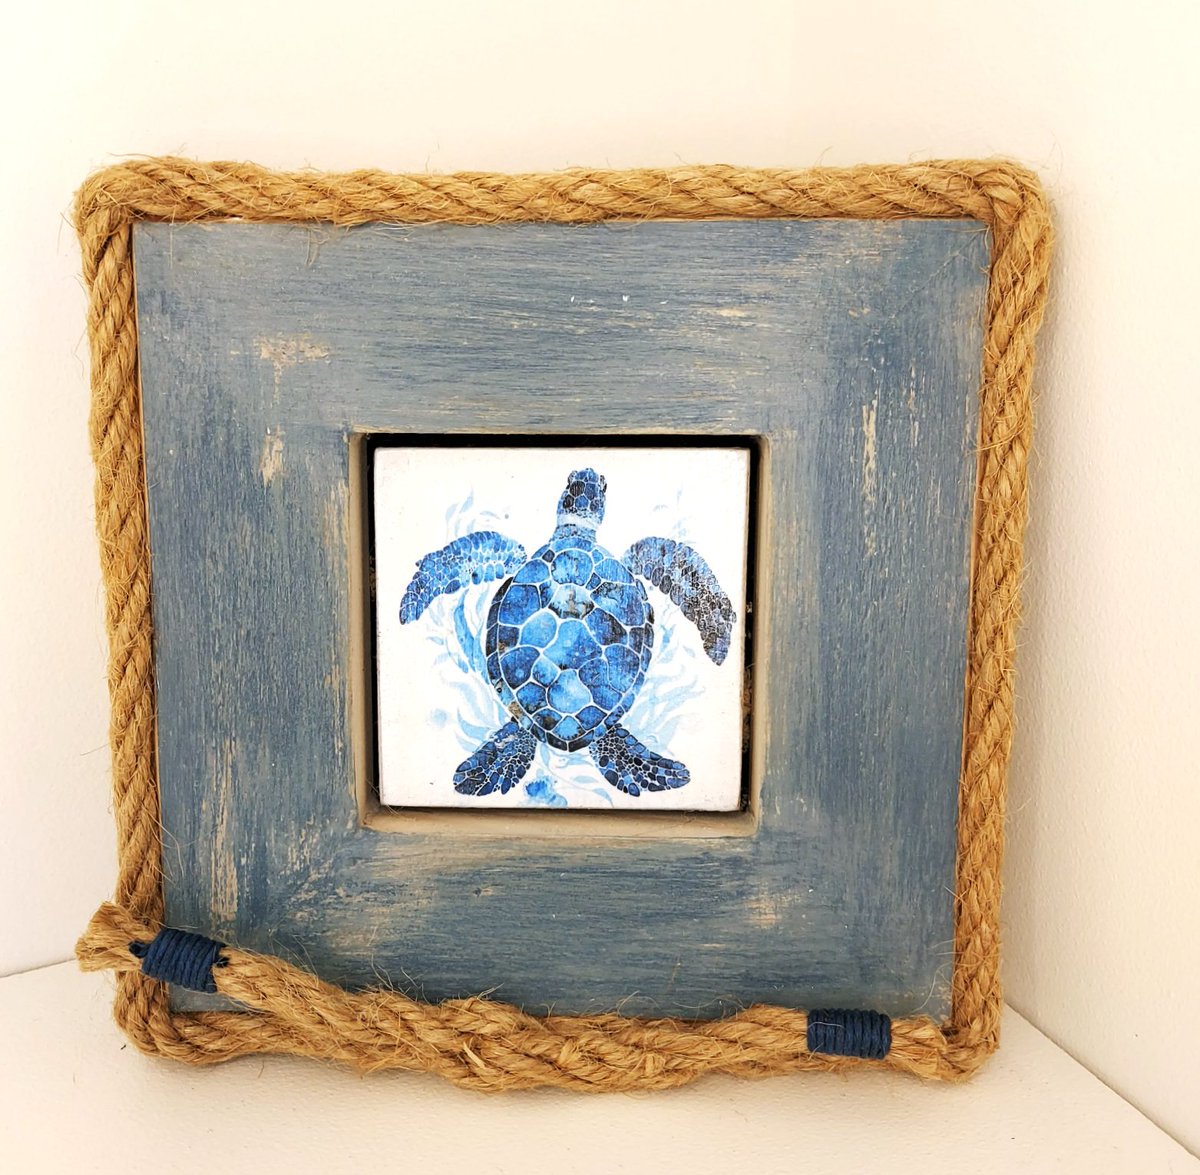 Vintage indigo Turtle , original design, recycled wood, by @TheWavingTurtle etsy.me/3IJCwev via @Etsy #art #originalart #handmade #gifts #nautical #BeachVibes #UniqueDesigns #turtle #vintage #thewavingturtle #etsy #EtsySeller #etsyuk